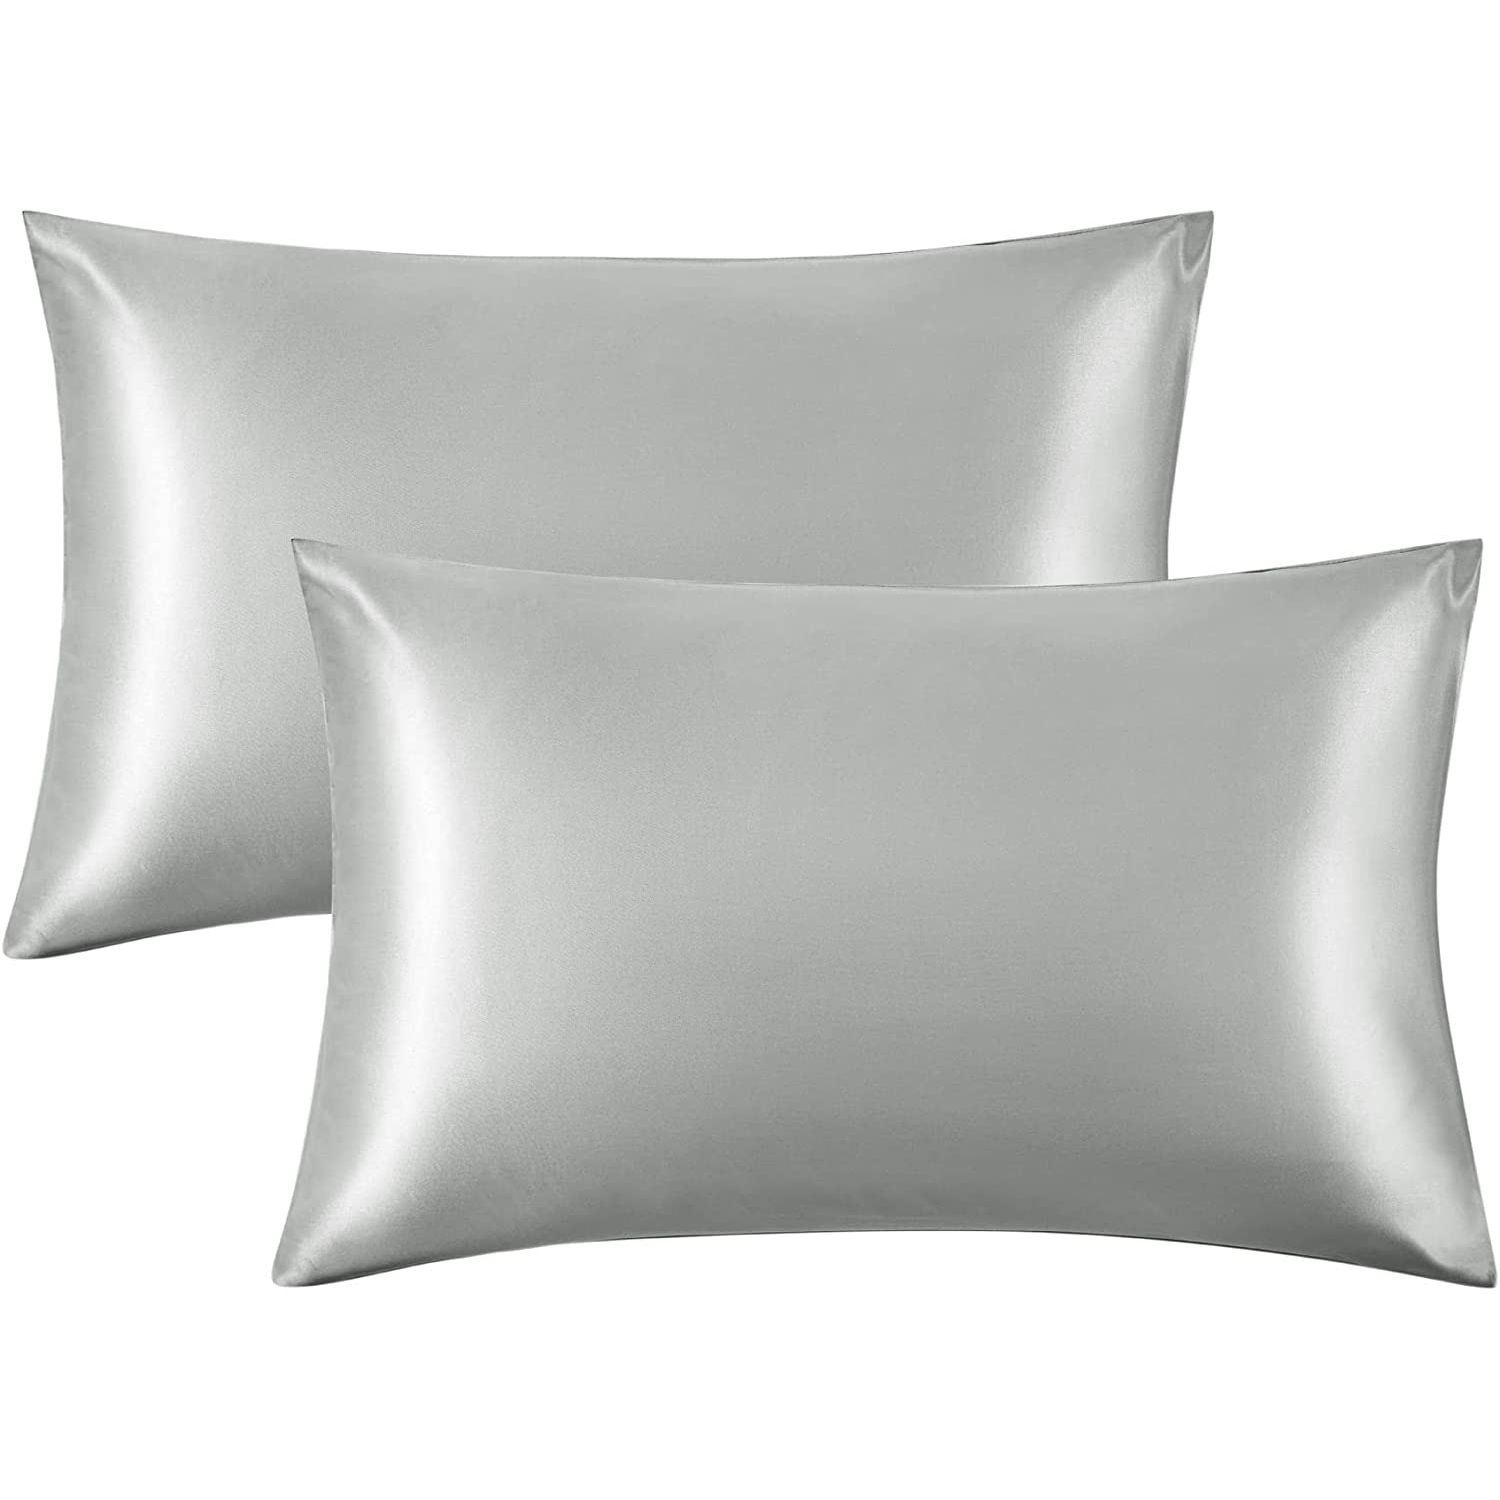 Comfortable Queen/Standard Silky Satin Pillowcase For Protect Body Skin & Hair